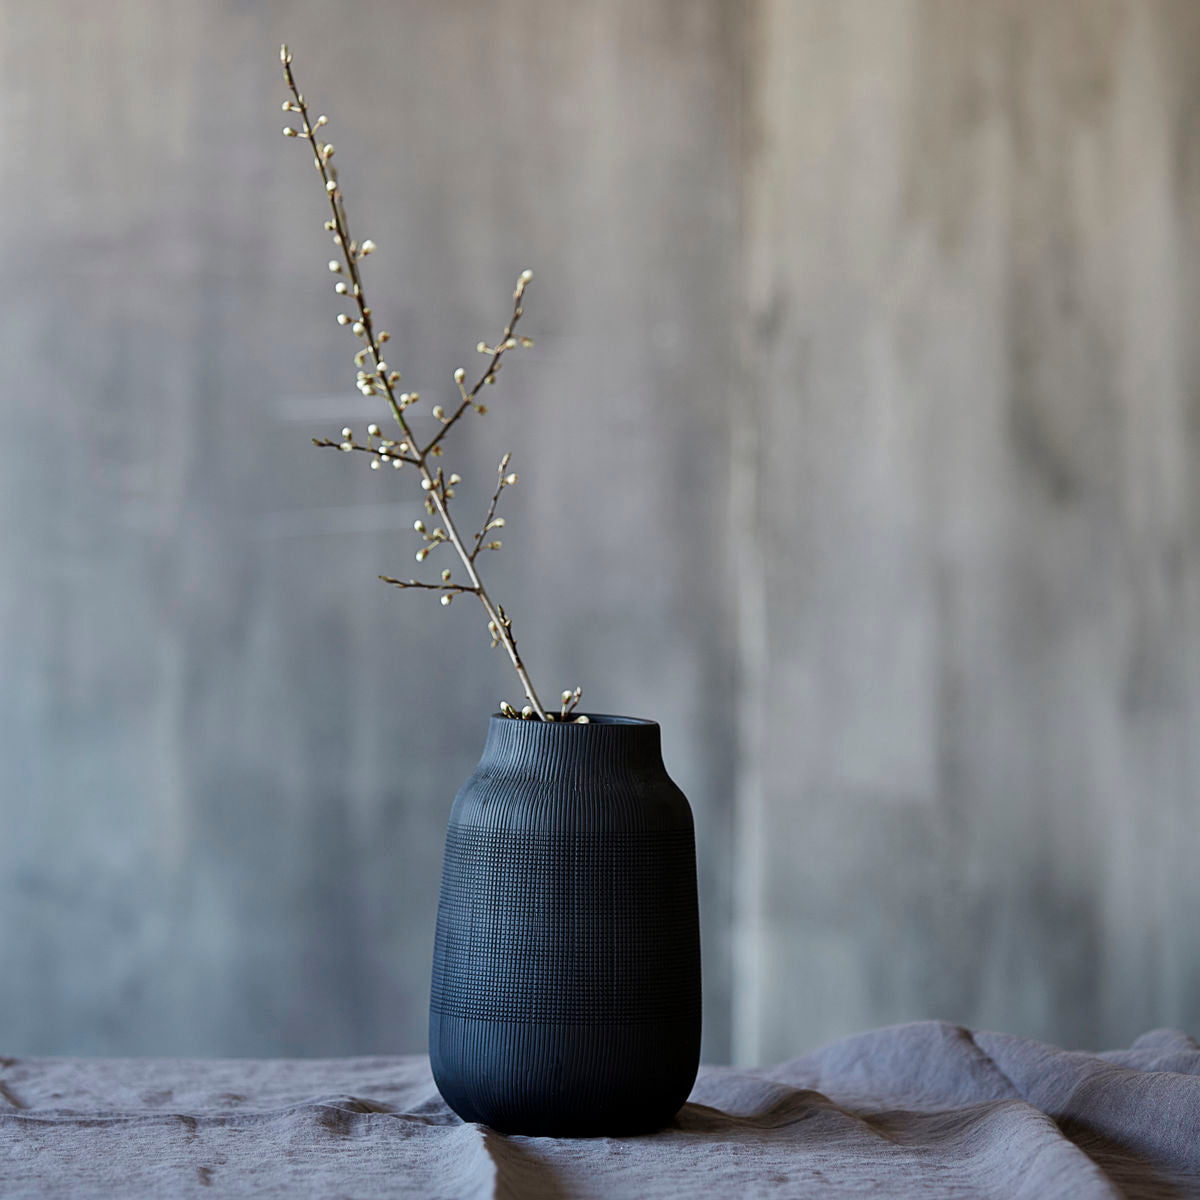 Vase Groove schwarz, in 2 Größen